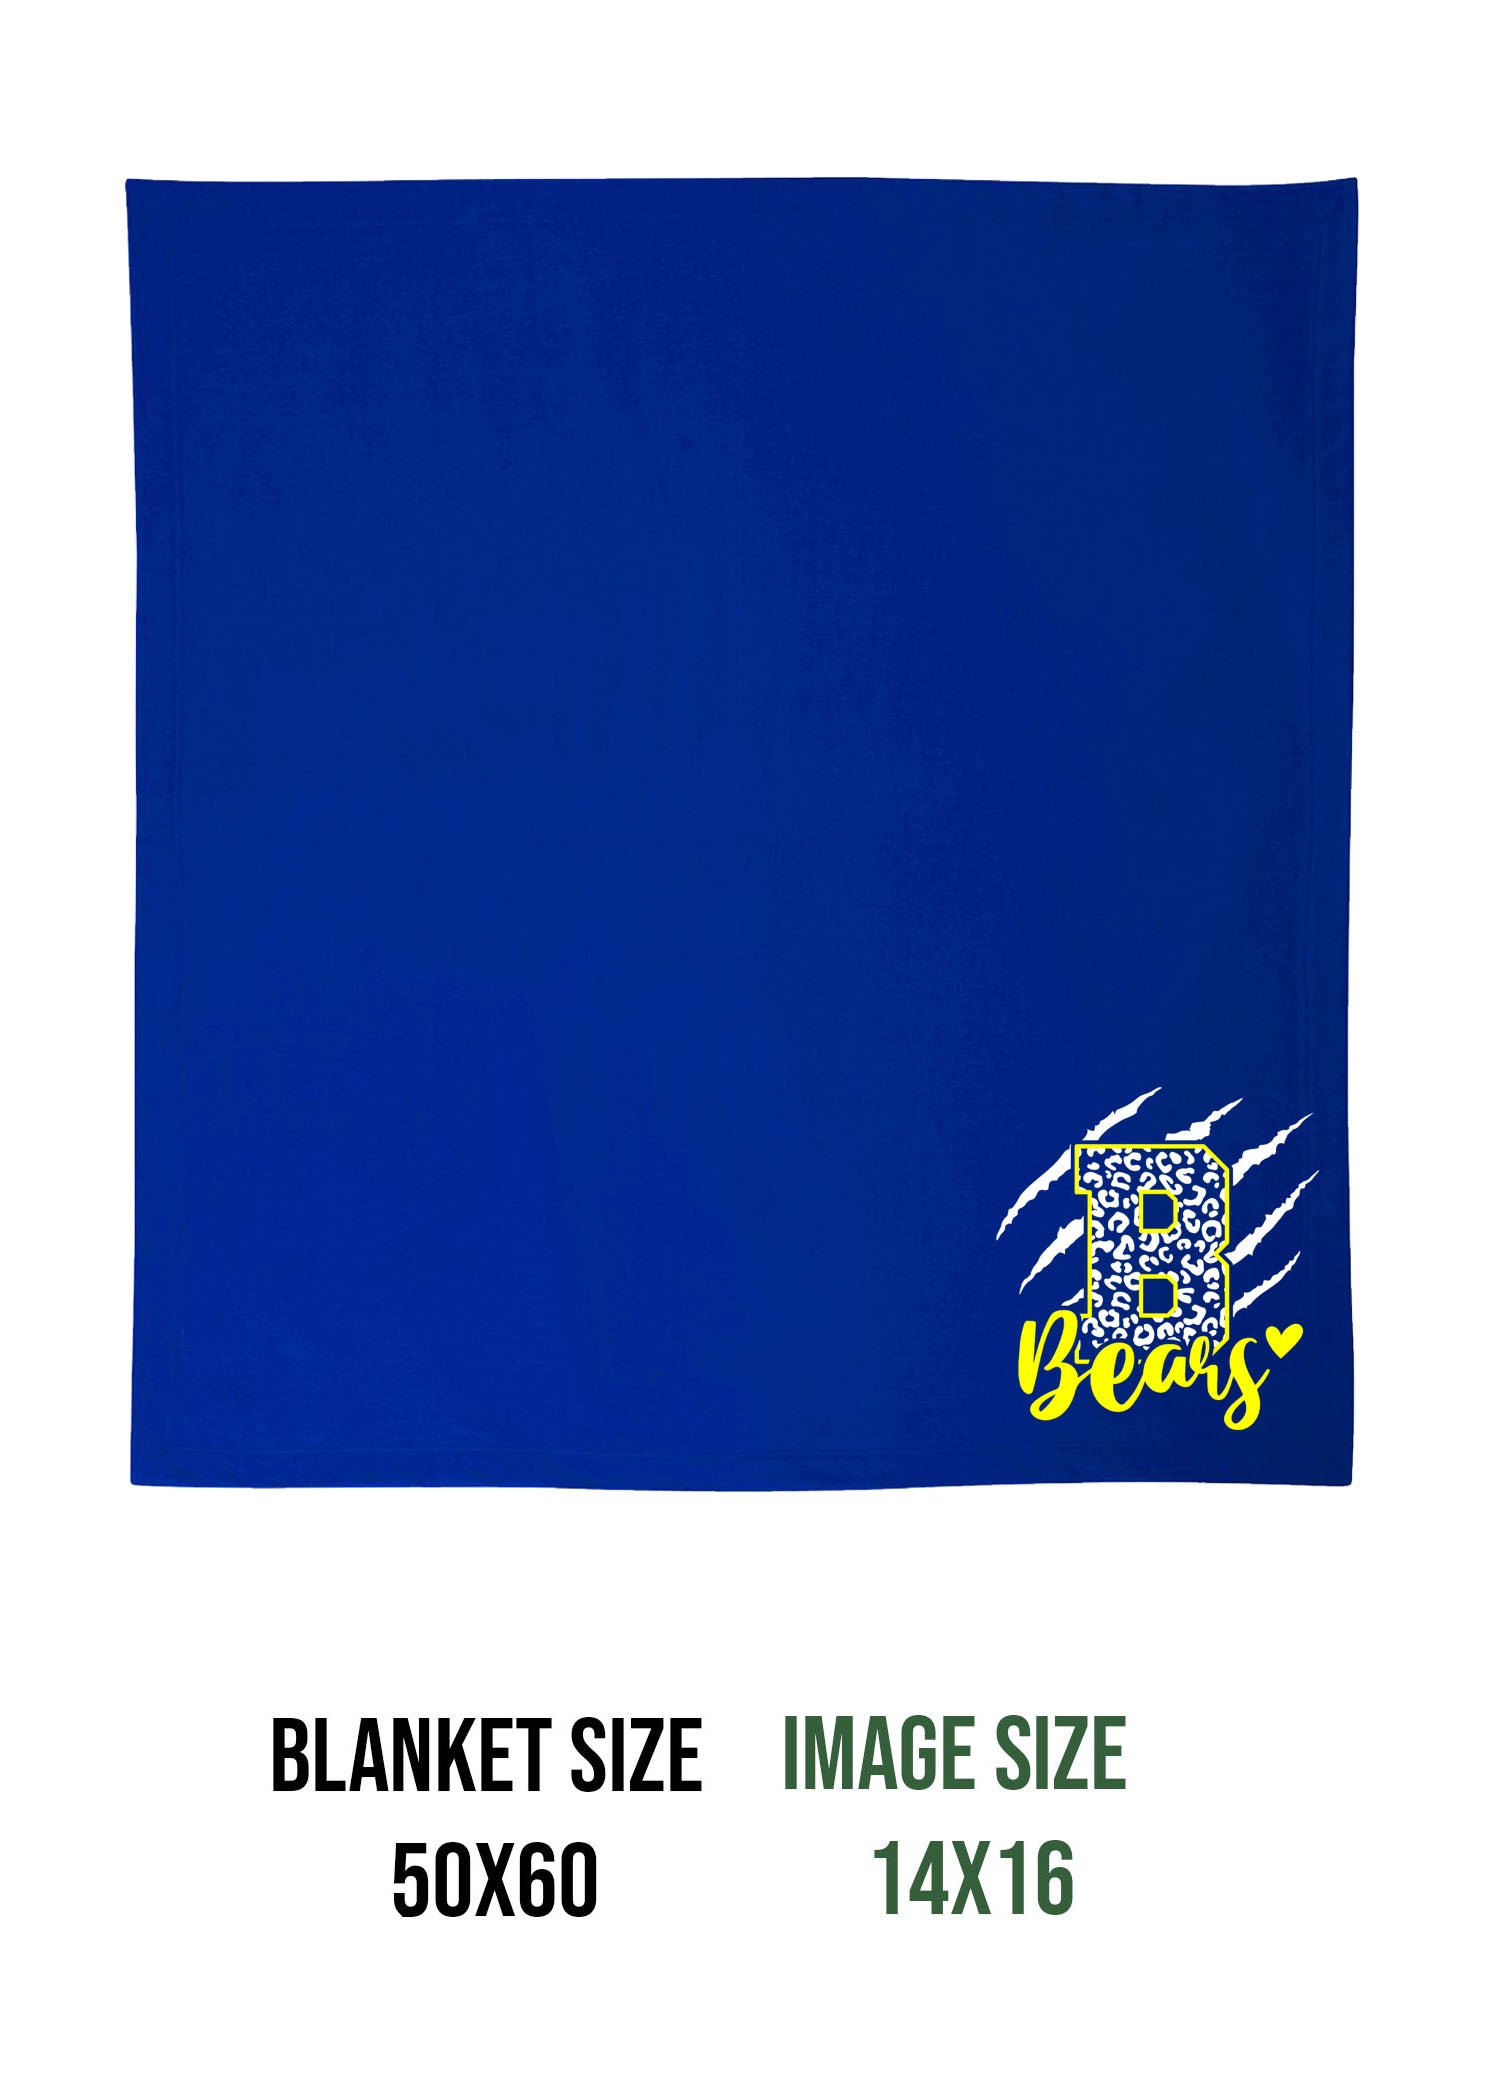 Blairstown Bears Design 11 Blanket